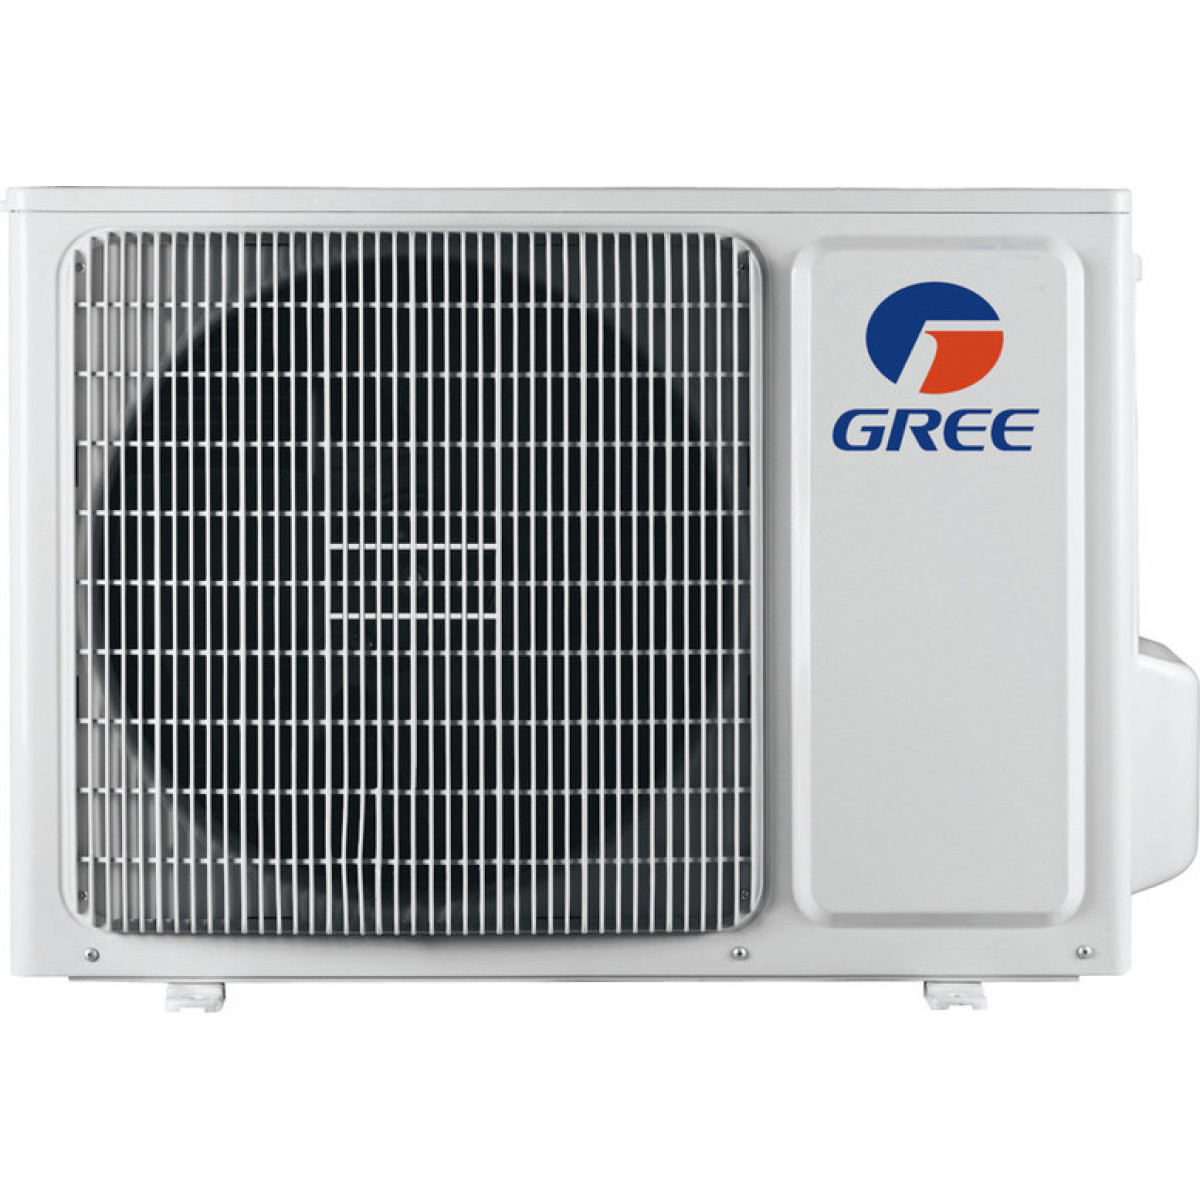 Κλιματιστικό Inventer Gree Aura GRCO-161QI/KAR-N5 16000 BTU με Ιονιστή και WiFi Κλιματιστικά Inverter